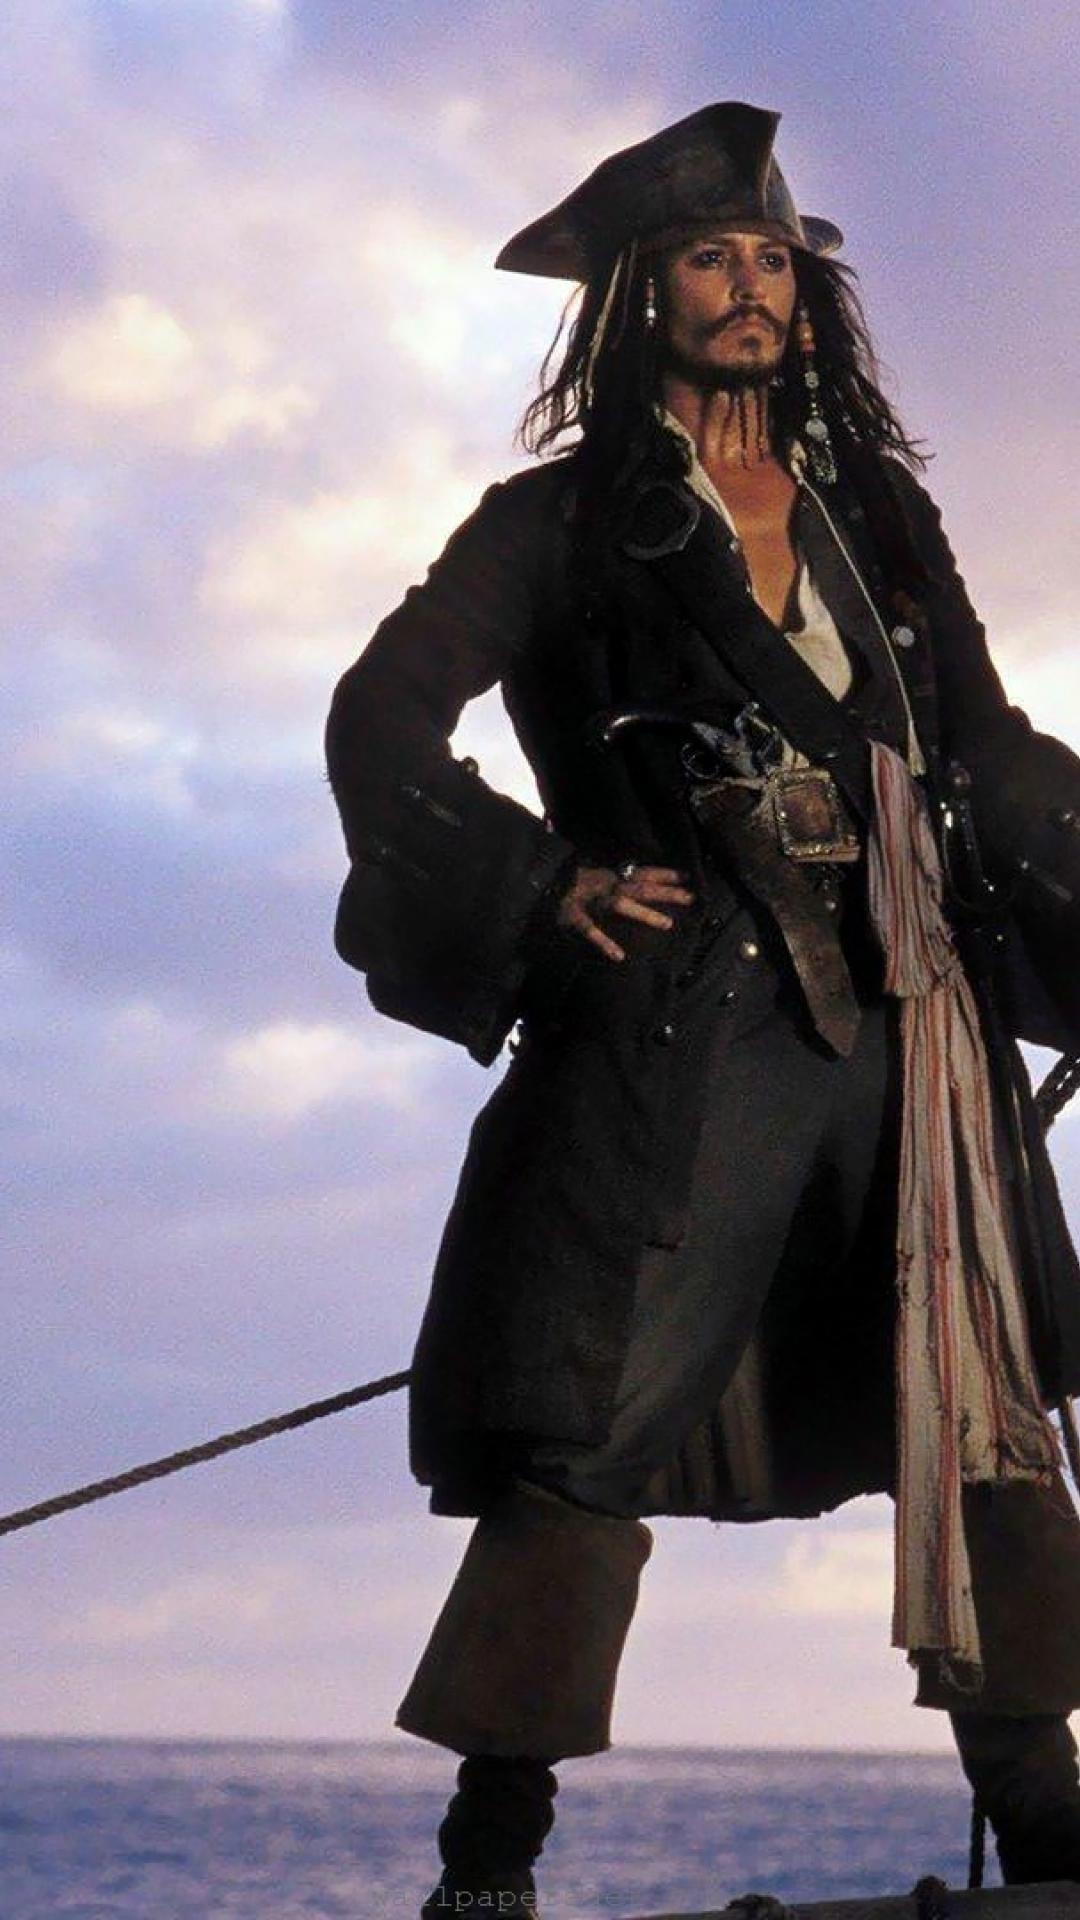 Captain Jack Sparrow Wallpaper background picture